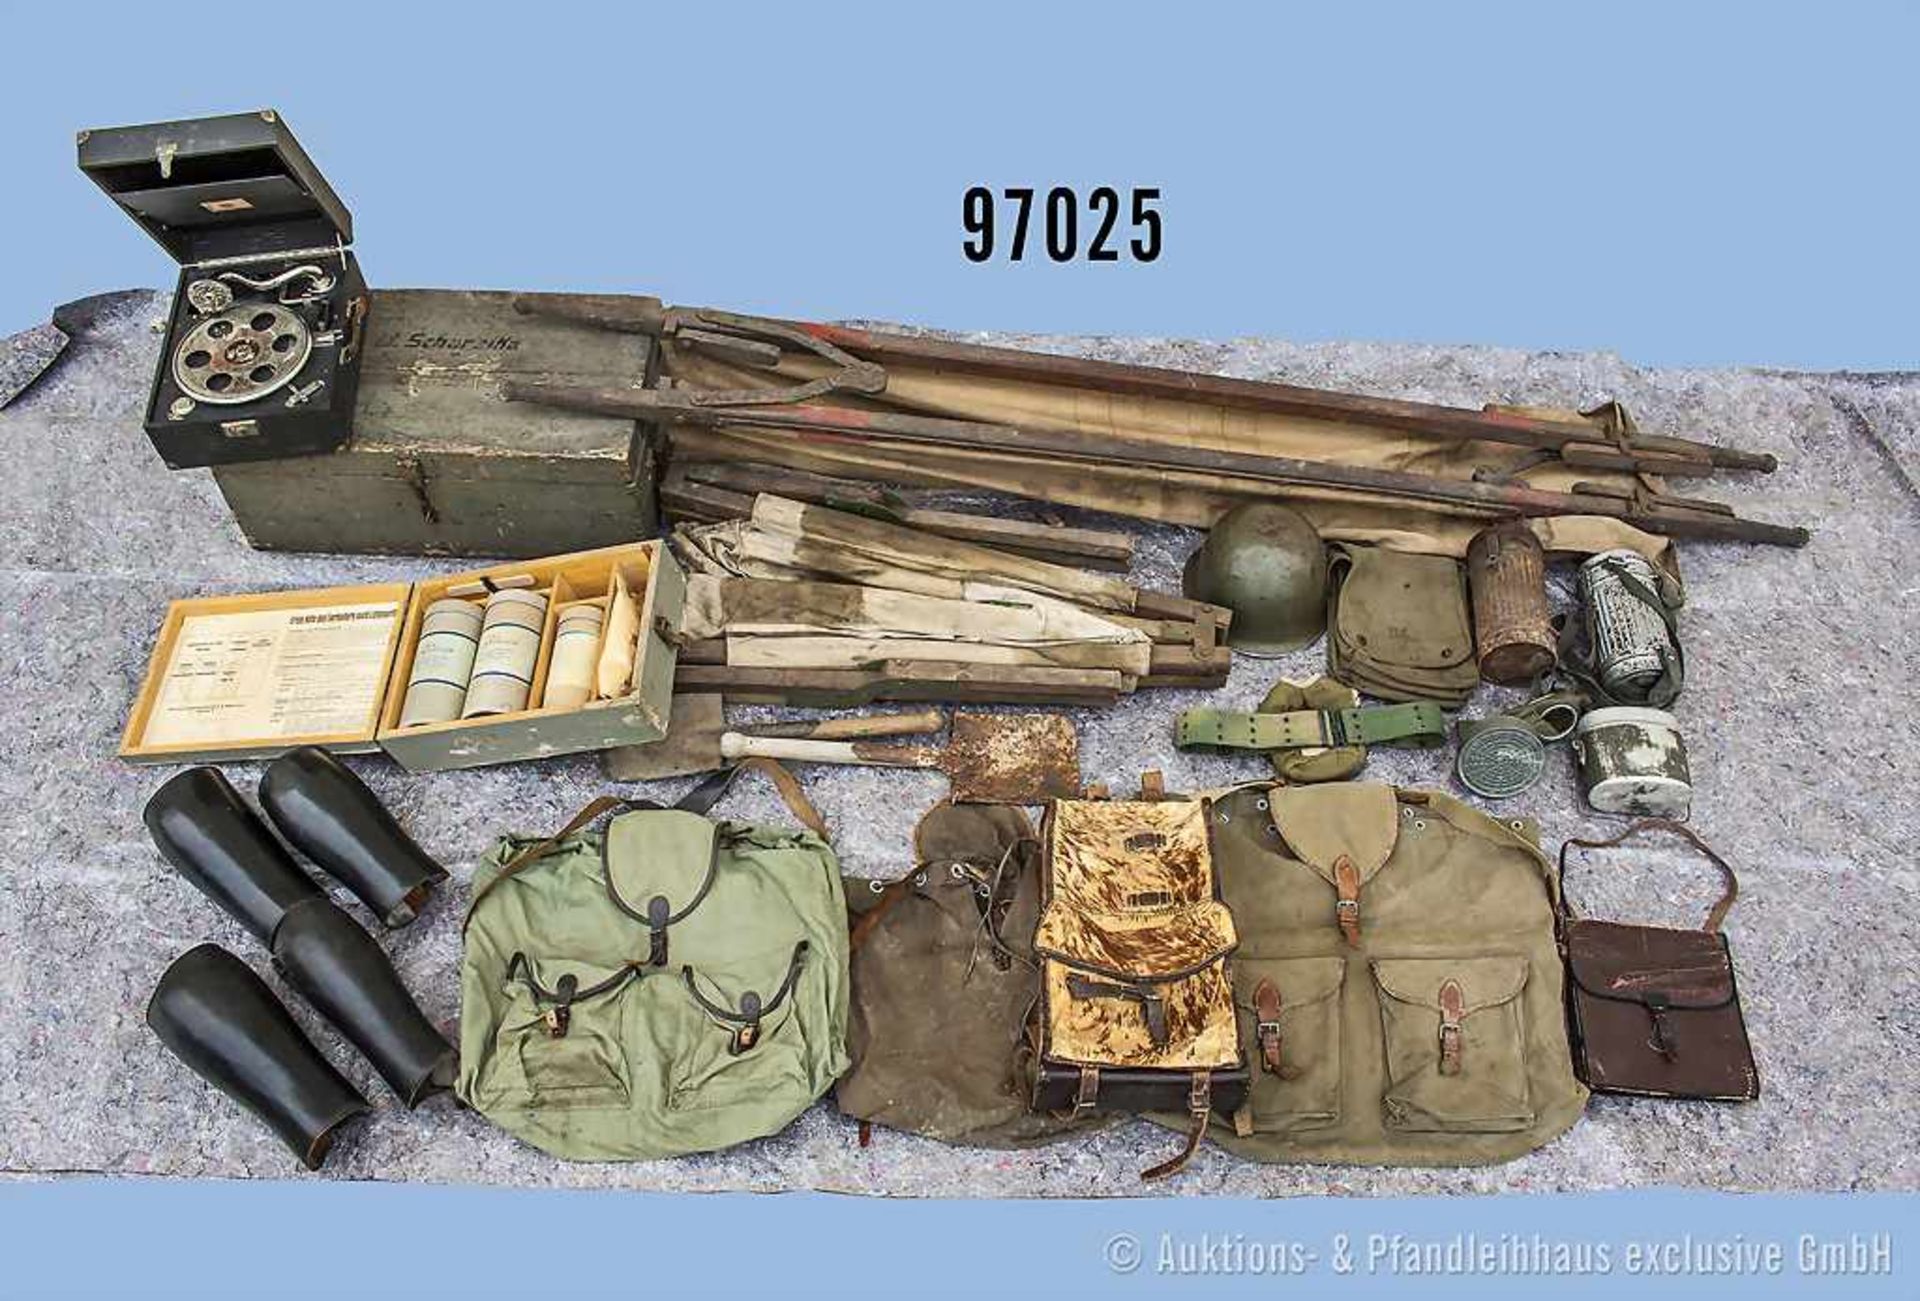 umfangreiches Ausrüstungskonvolut, überwiegend 2. WK, Wehrmacht/uniformierte Organisationen/andere